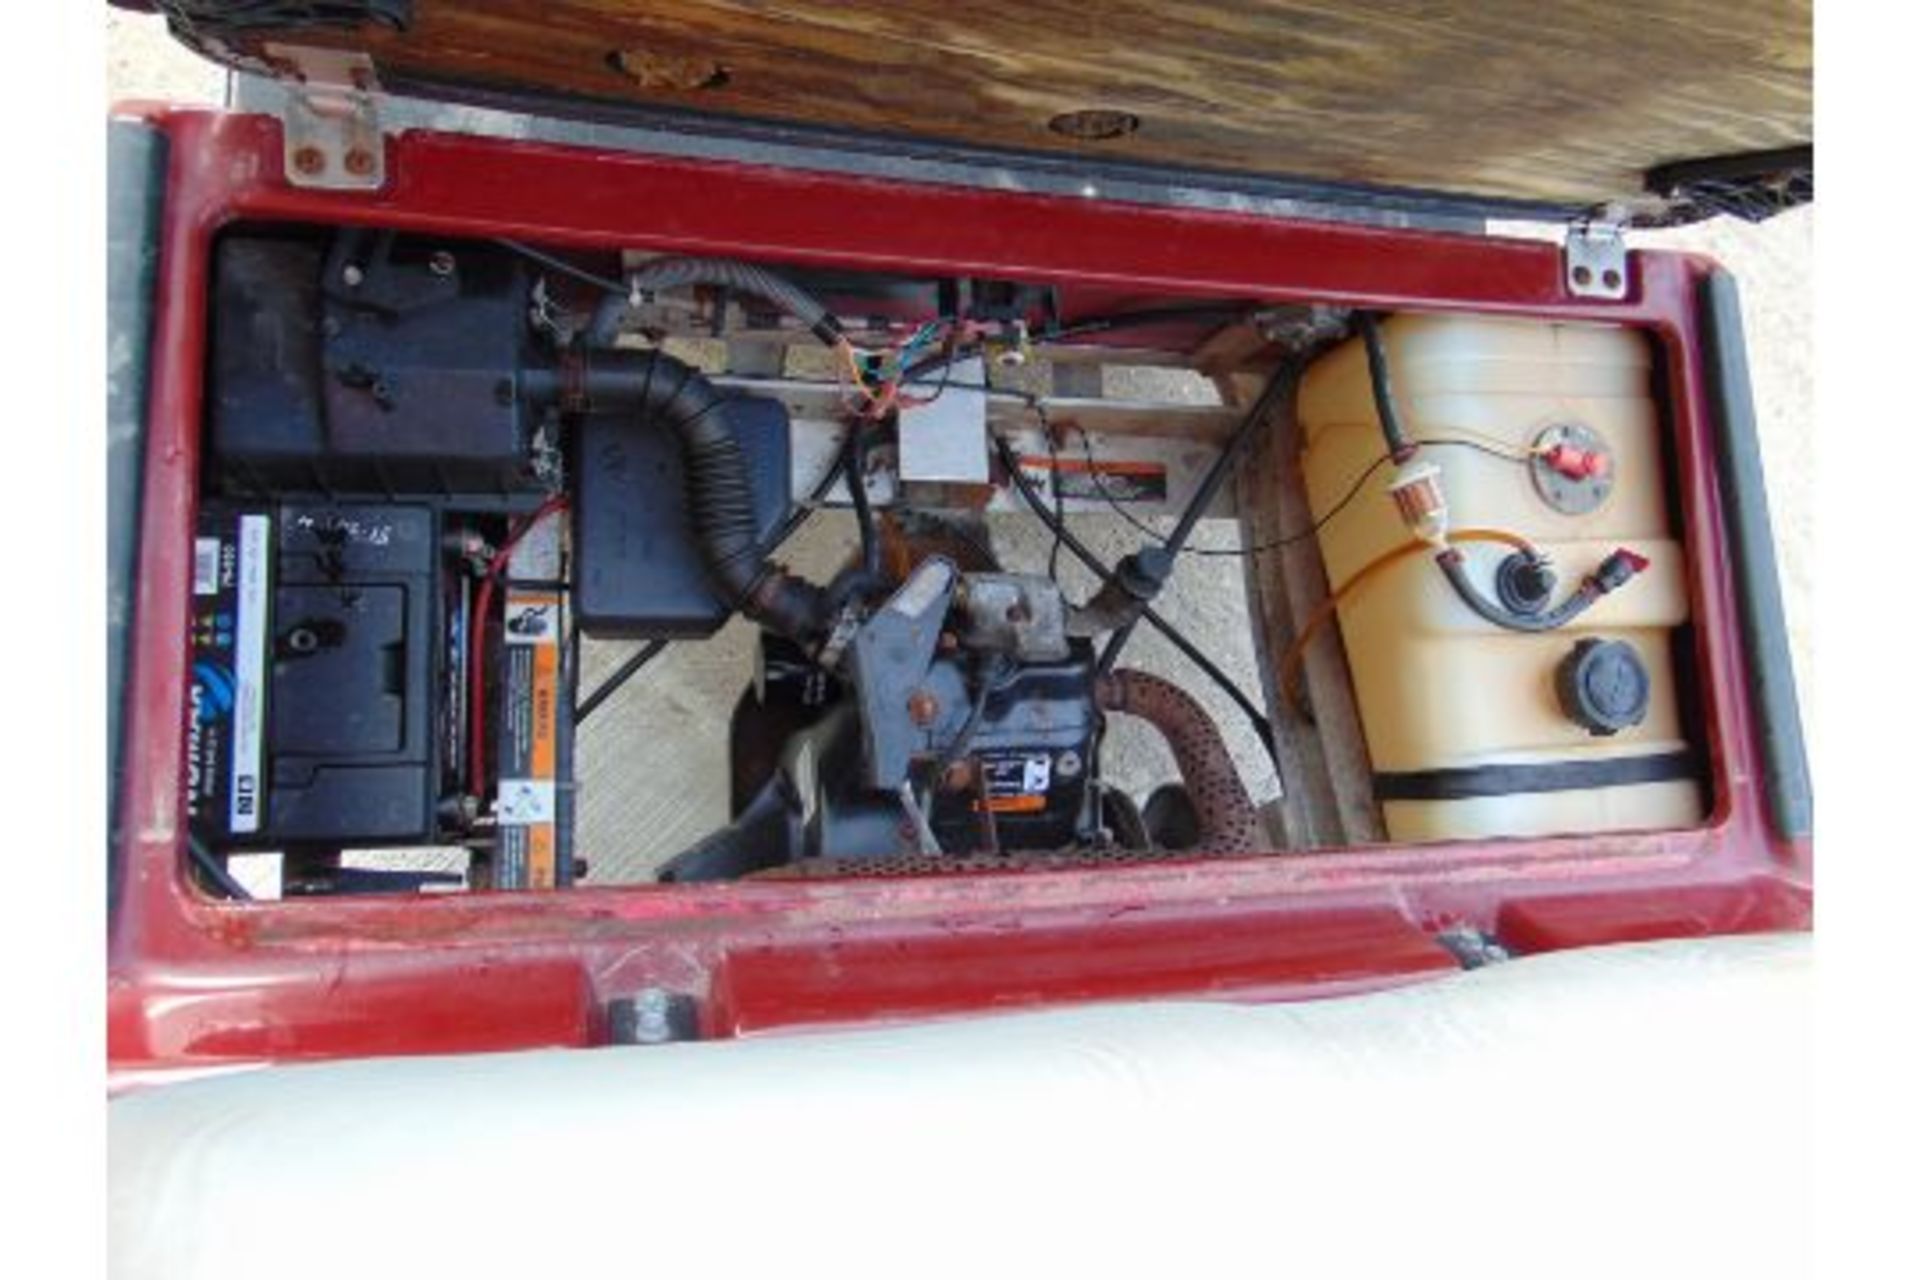 Club Car Golf Cart - Petrol Engine - Image 15 of 17